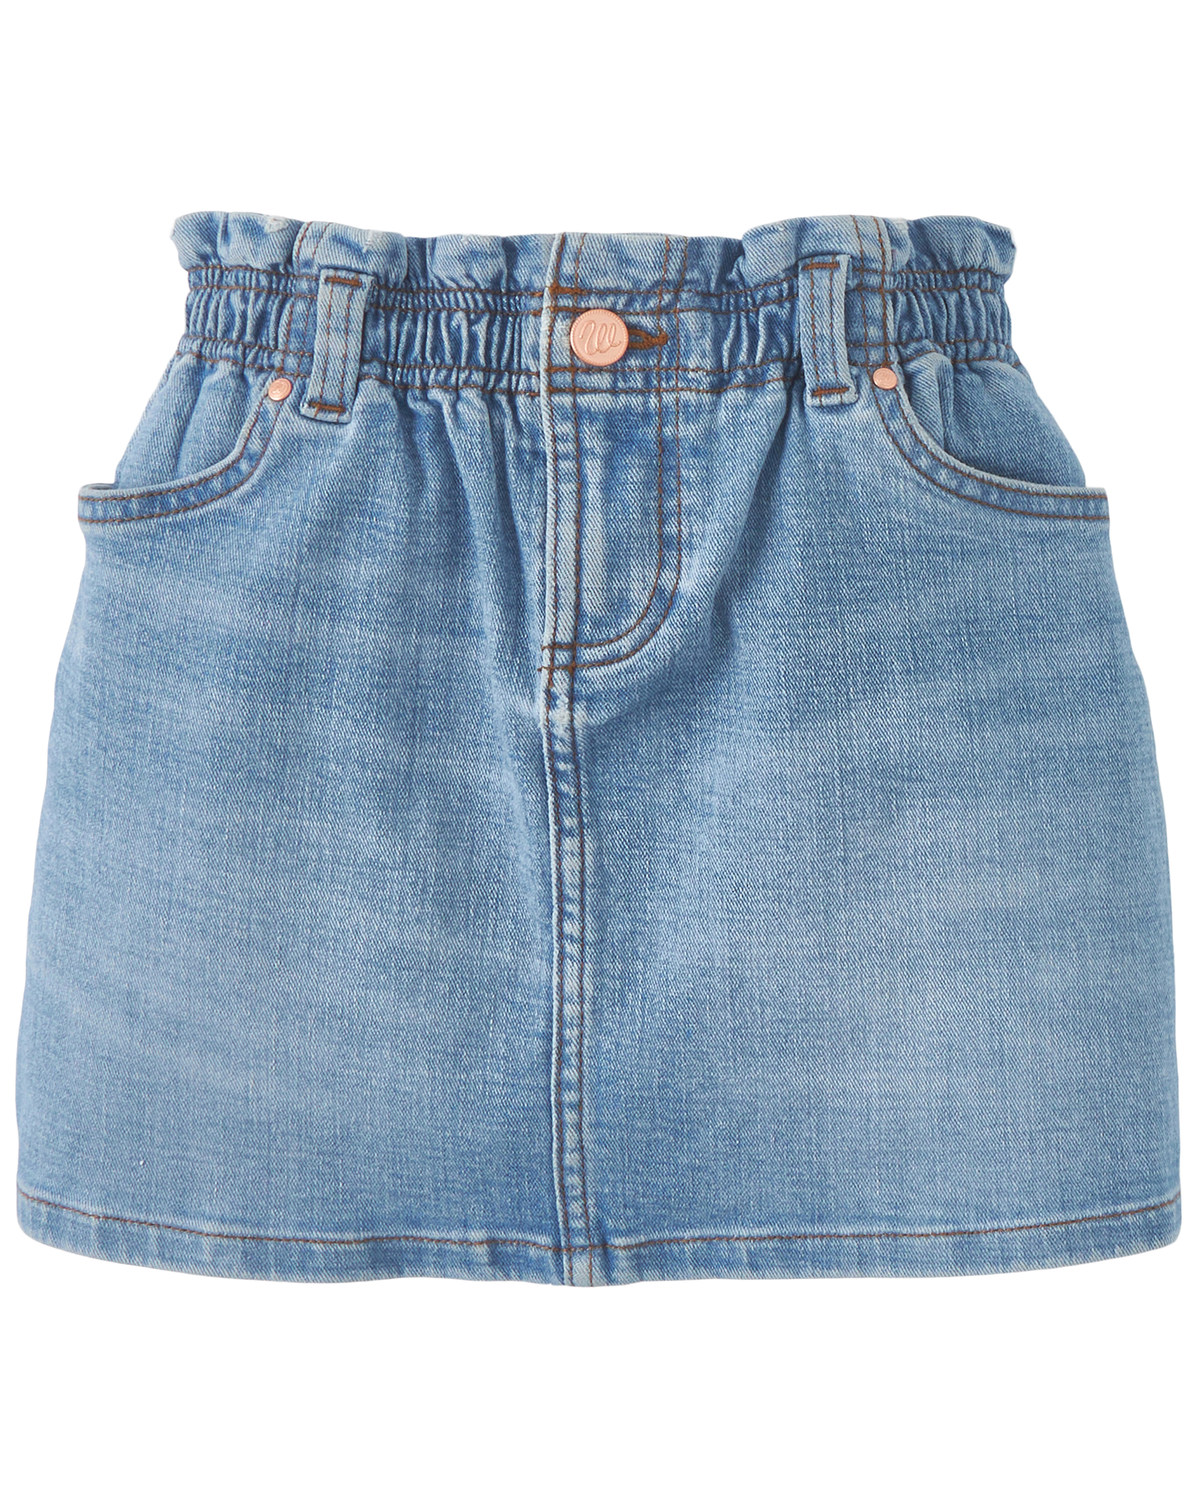 Wrangler Girls' Light Wash Denim Skirt